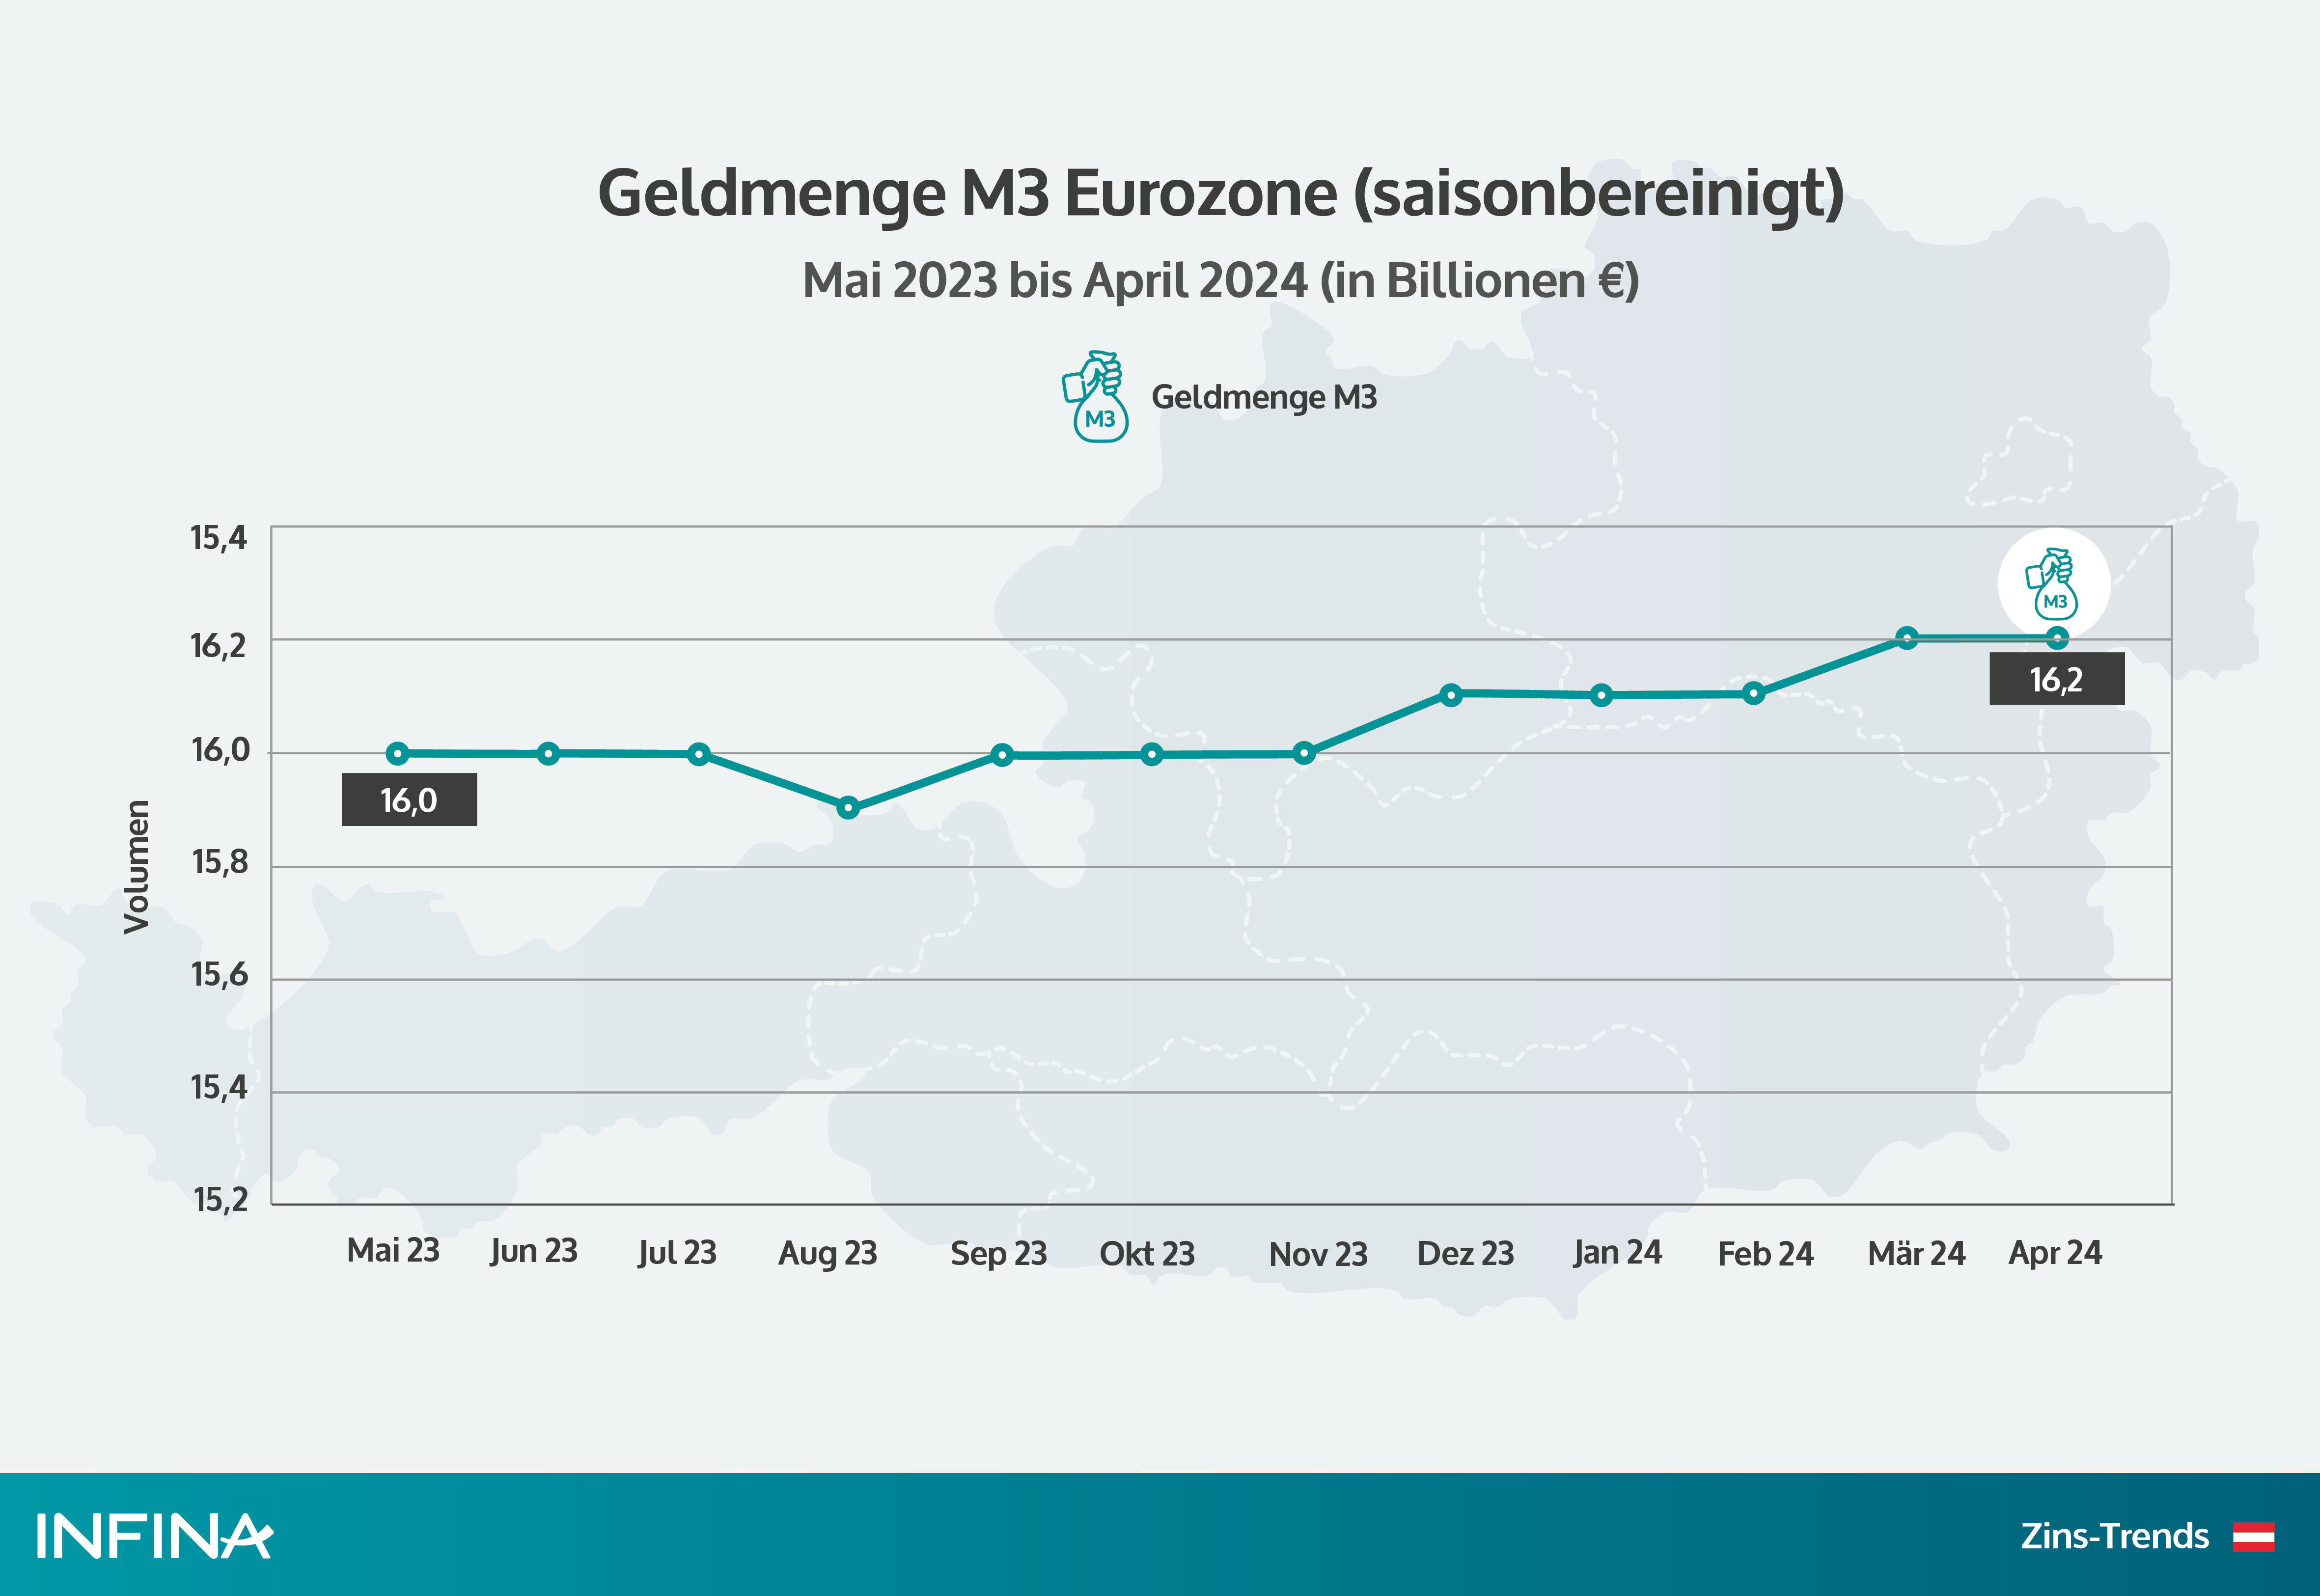 Geldmenge M3 Eurozone in den letzten 12 Monaten